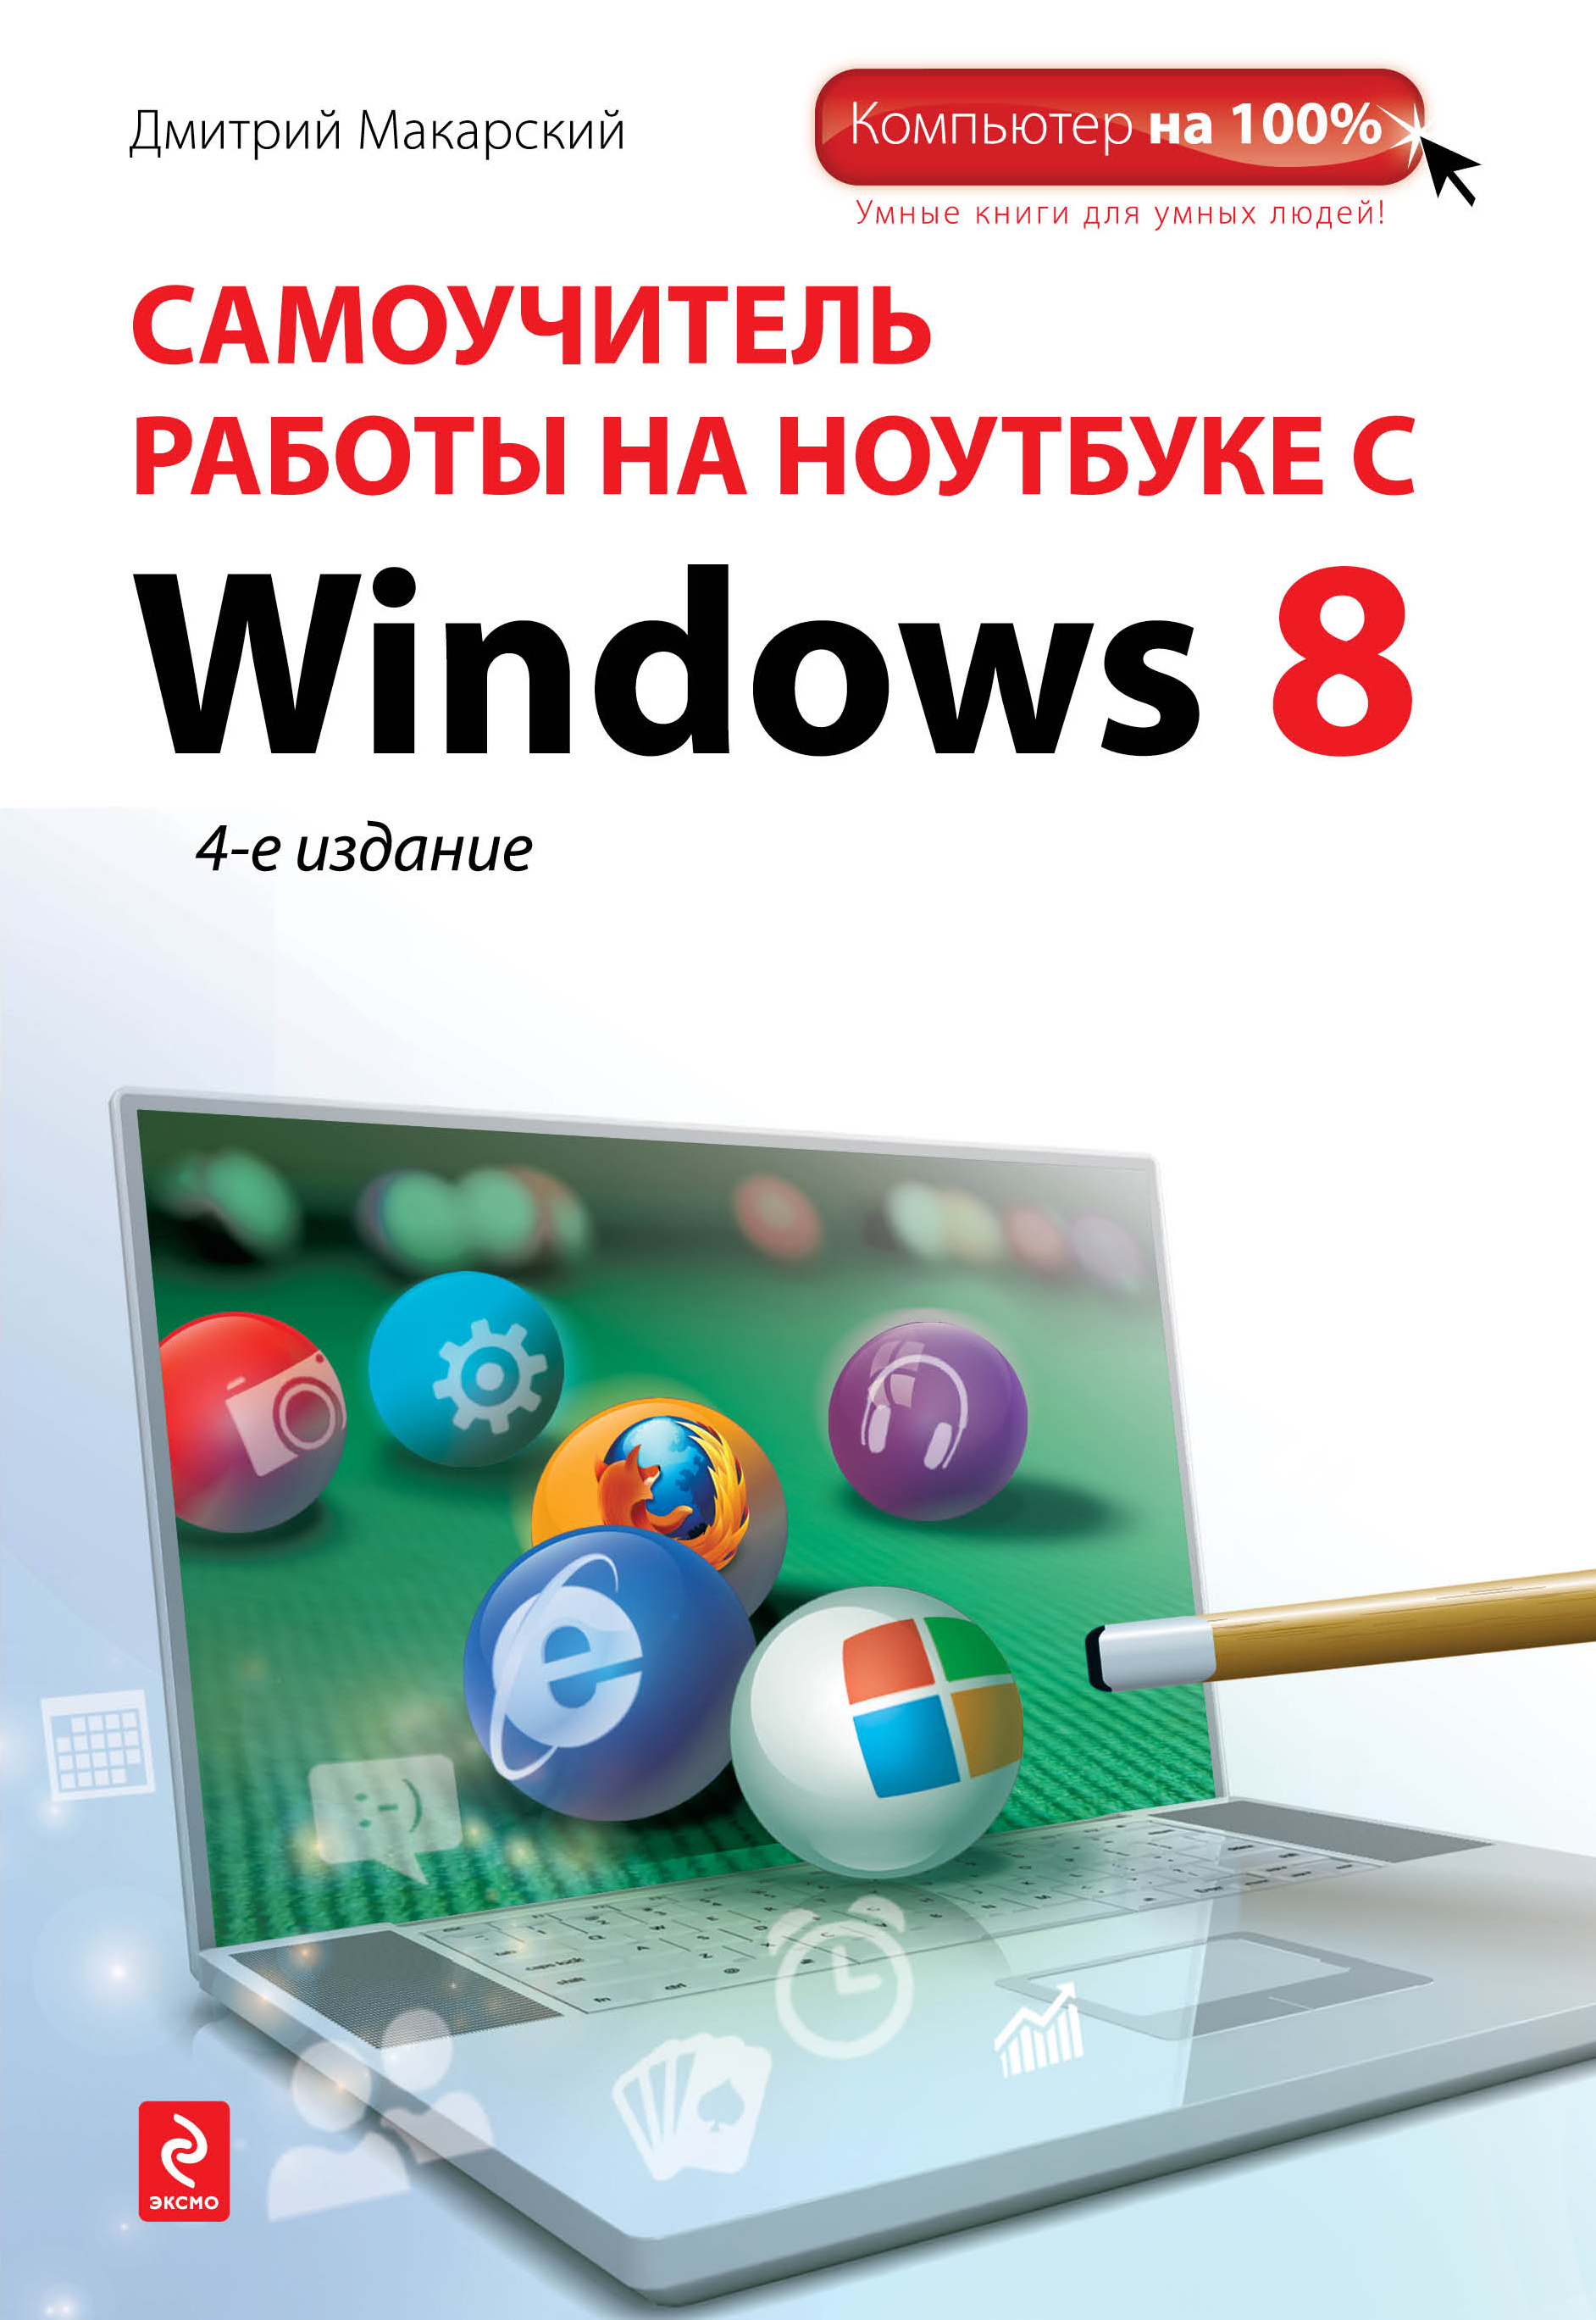 Самоучитель работы на ноутбуке с Windows 8 развивается внимательно рассматривая